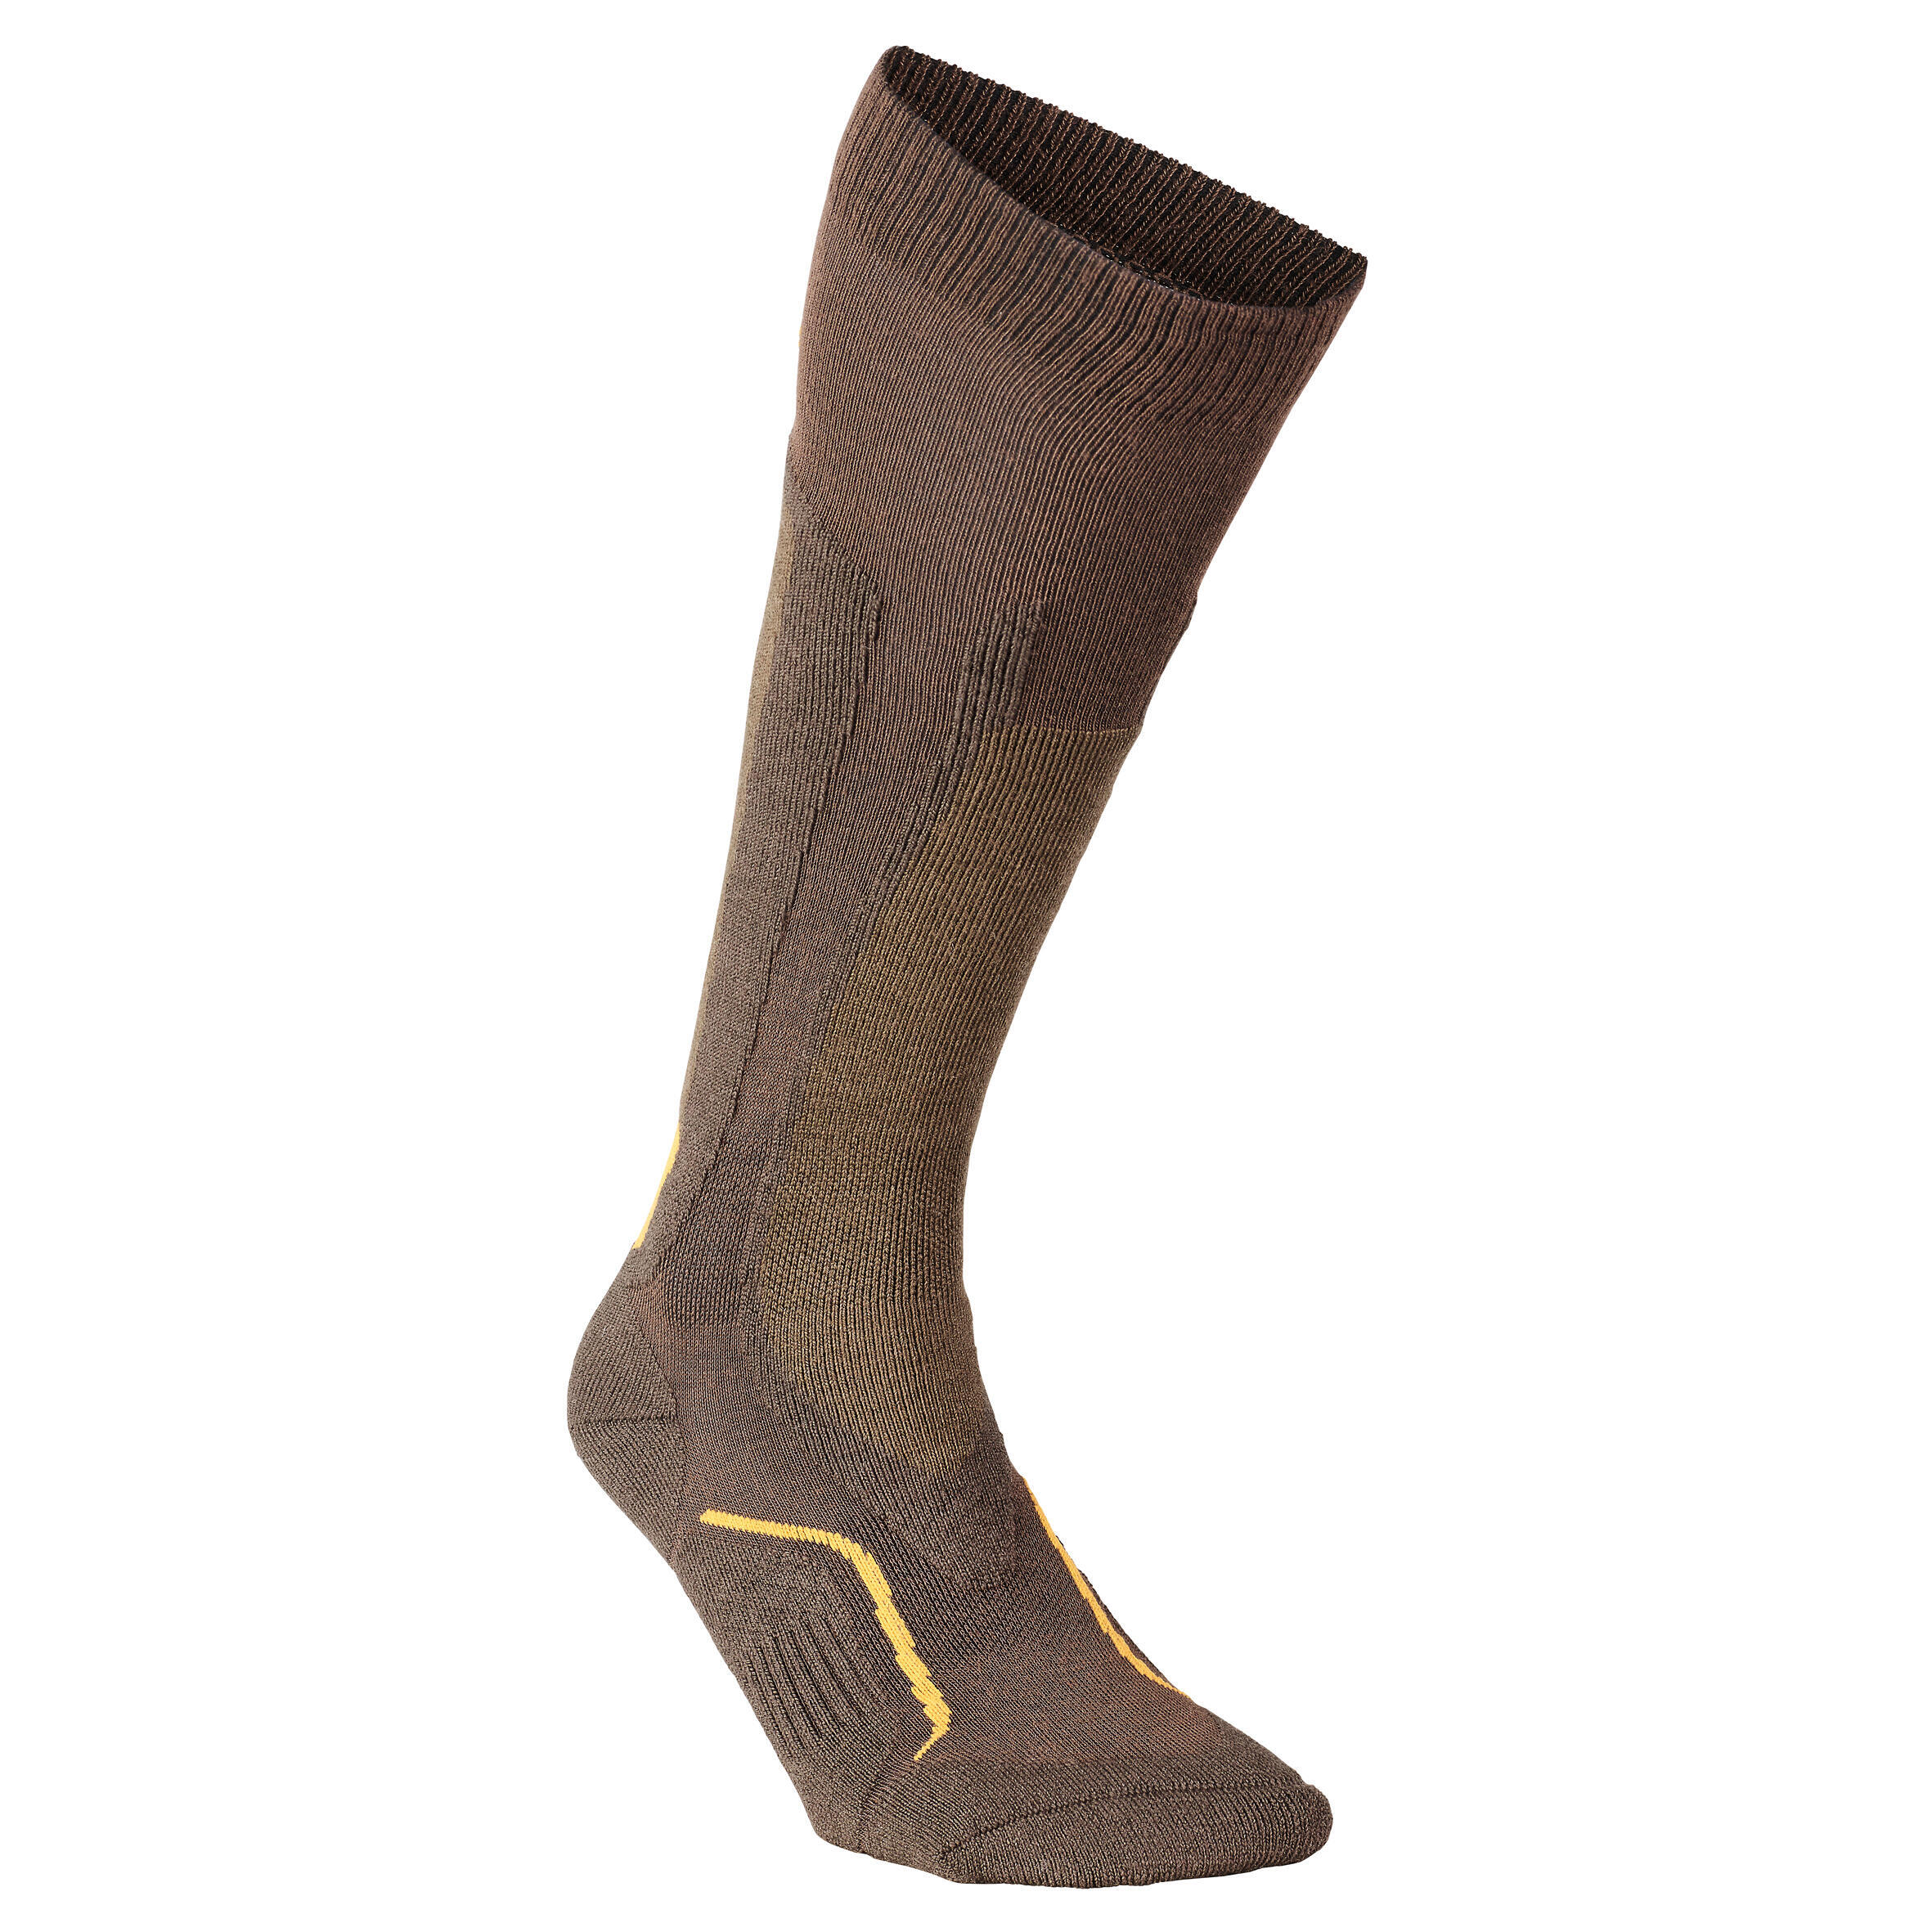 Охотничьи носки шерстяные носки 500 теплые высокие SOLOGNAC носки носки женские прикольные носки носки махровые высокие разные цвета носки теплые